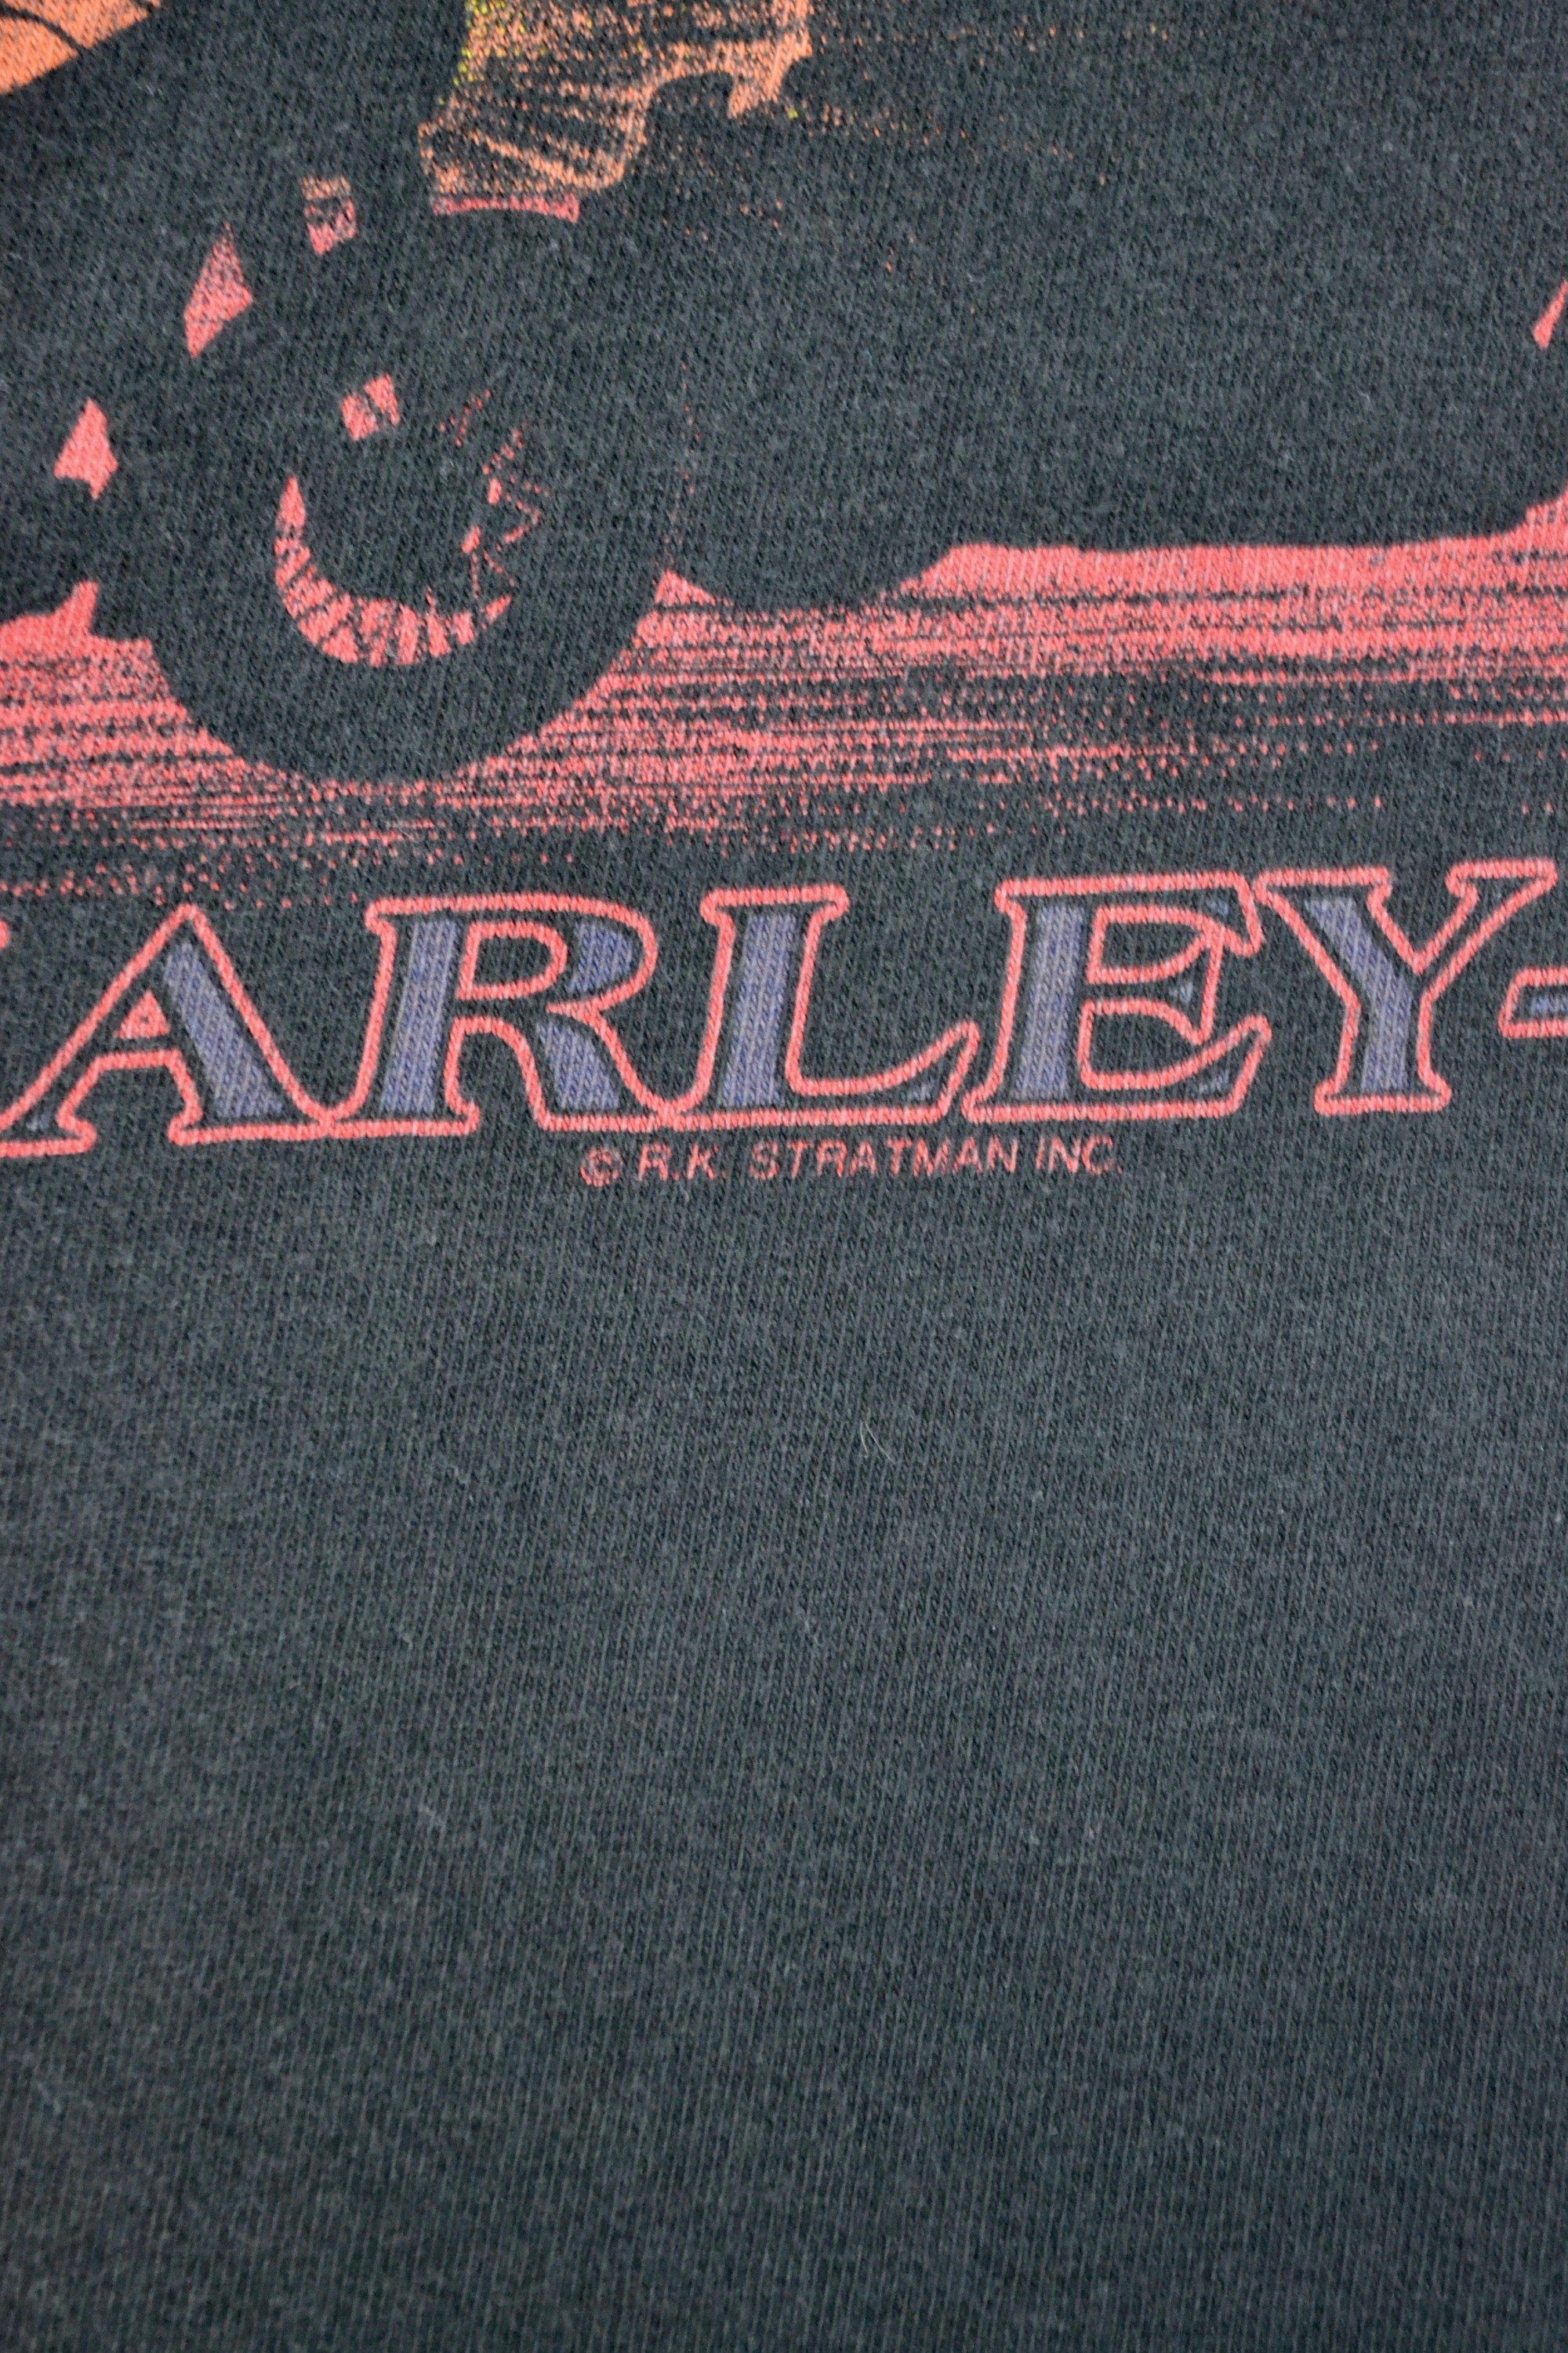 Pride of the Prairie Harley